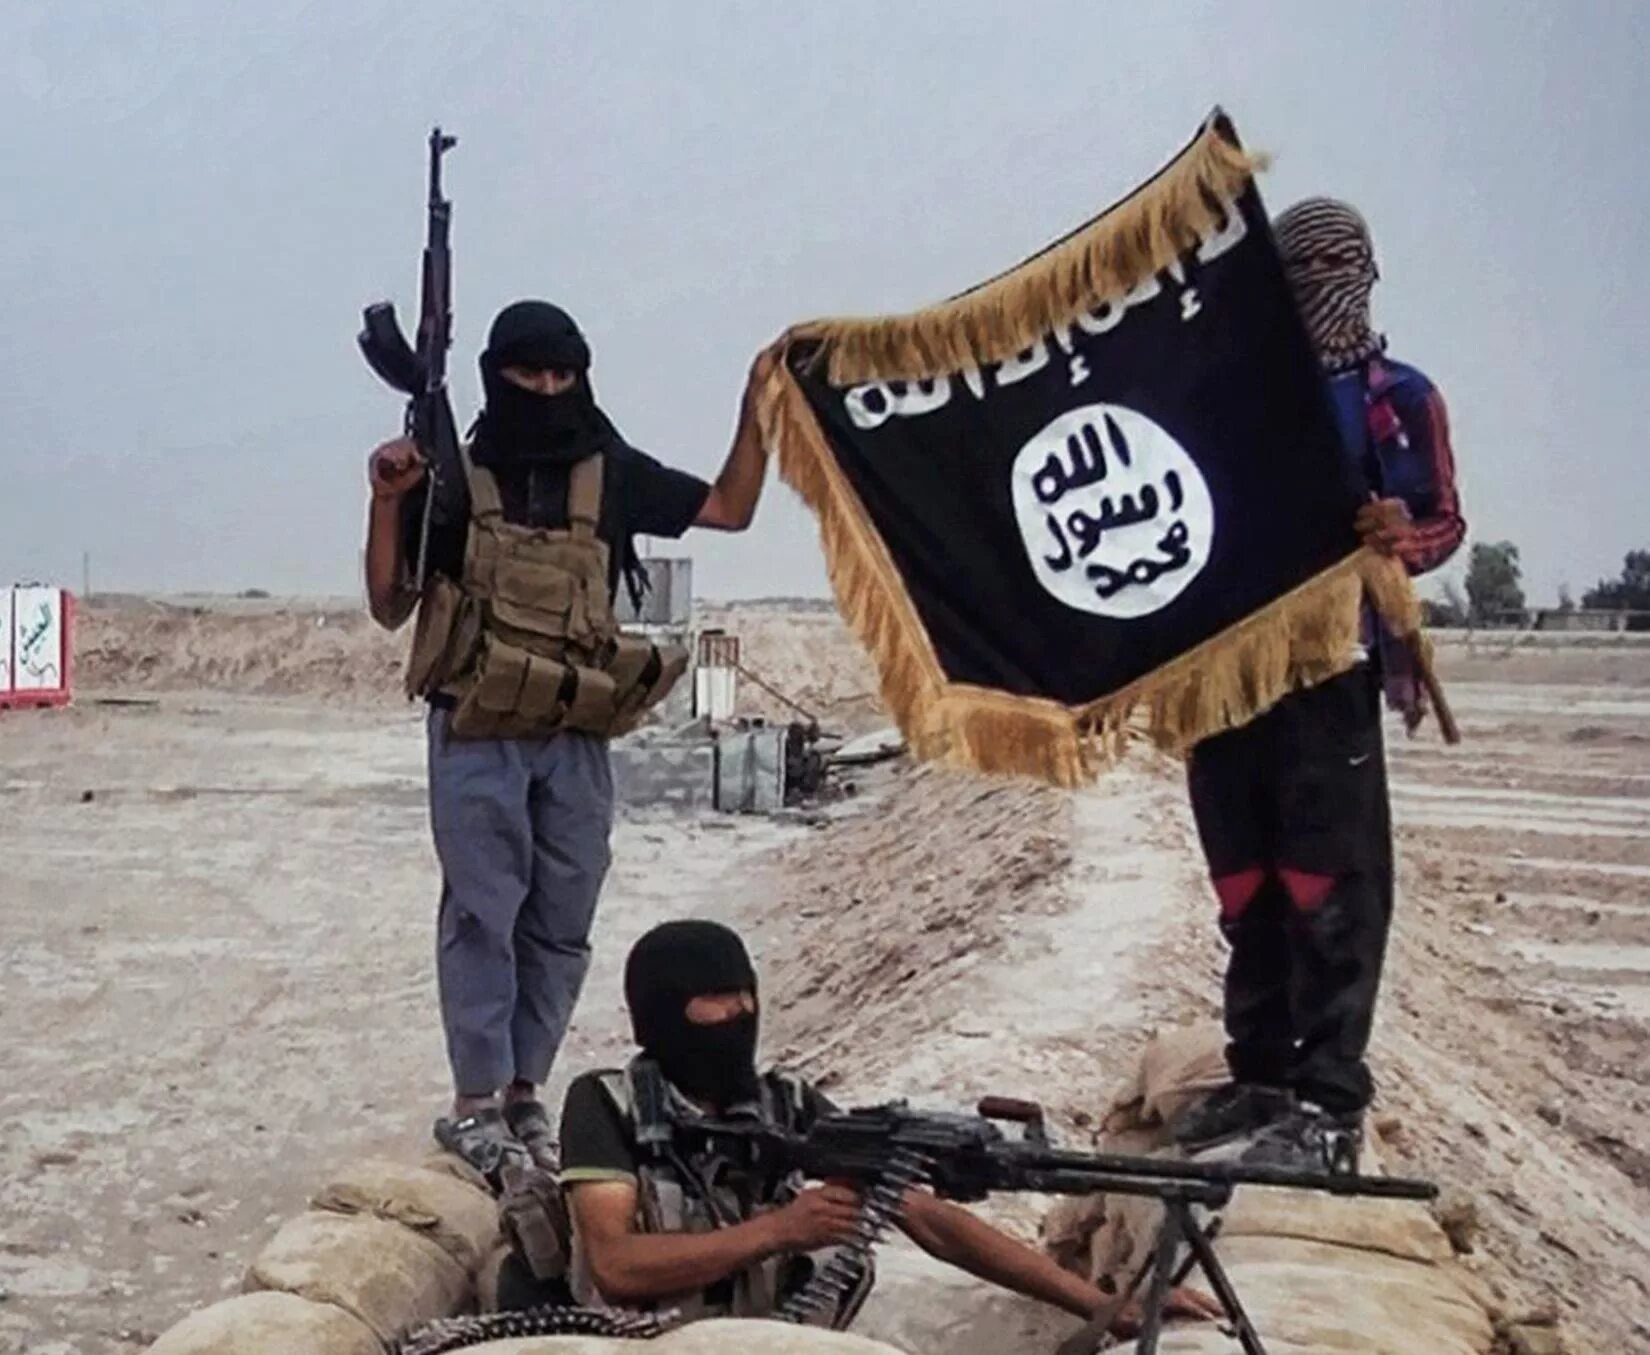 Фото террористов на фоне флага игил. Флаг террористов ИГИЛ. Исламское государство Ирак.